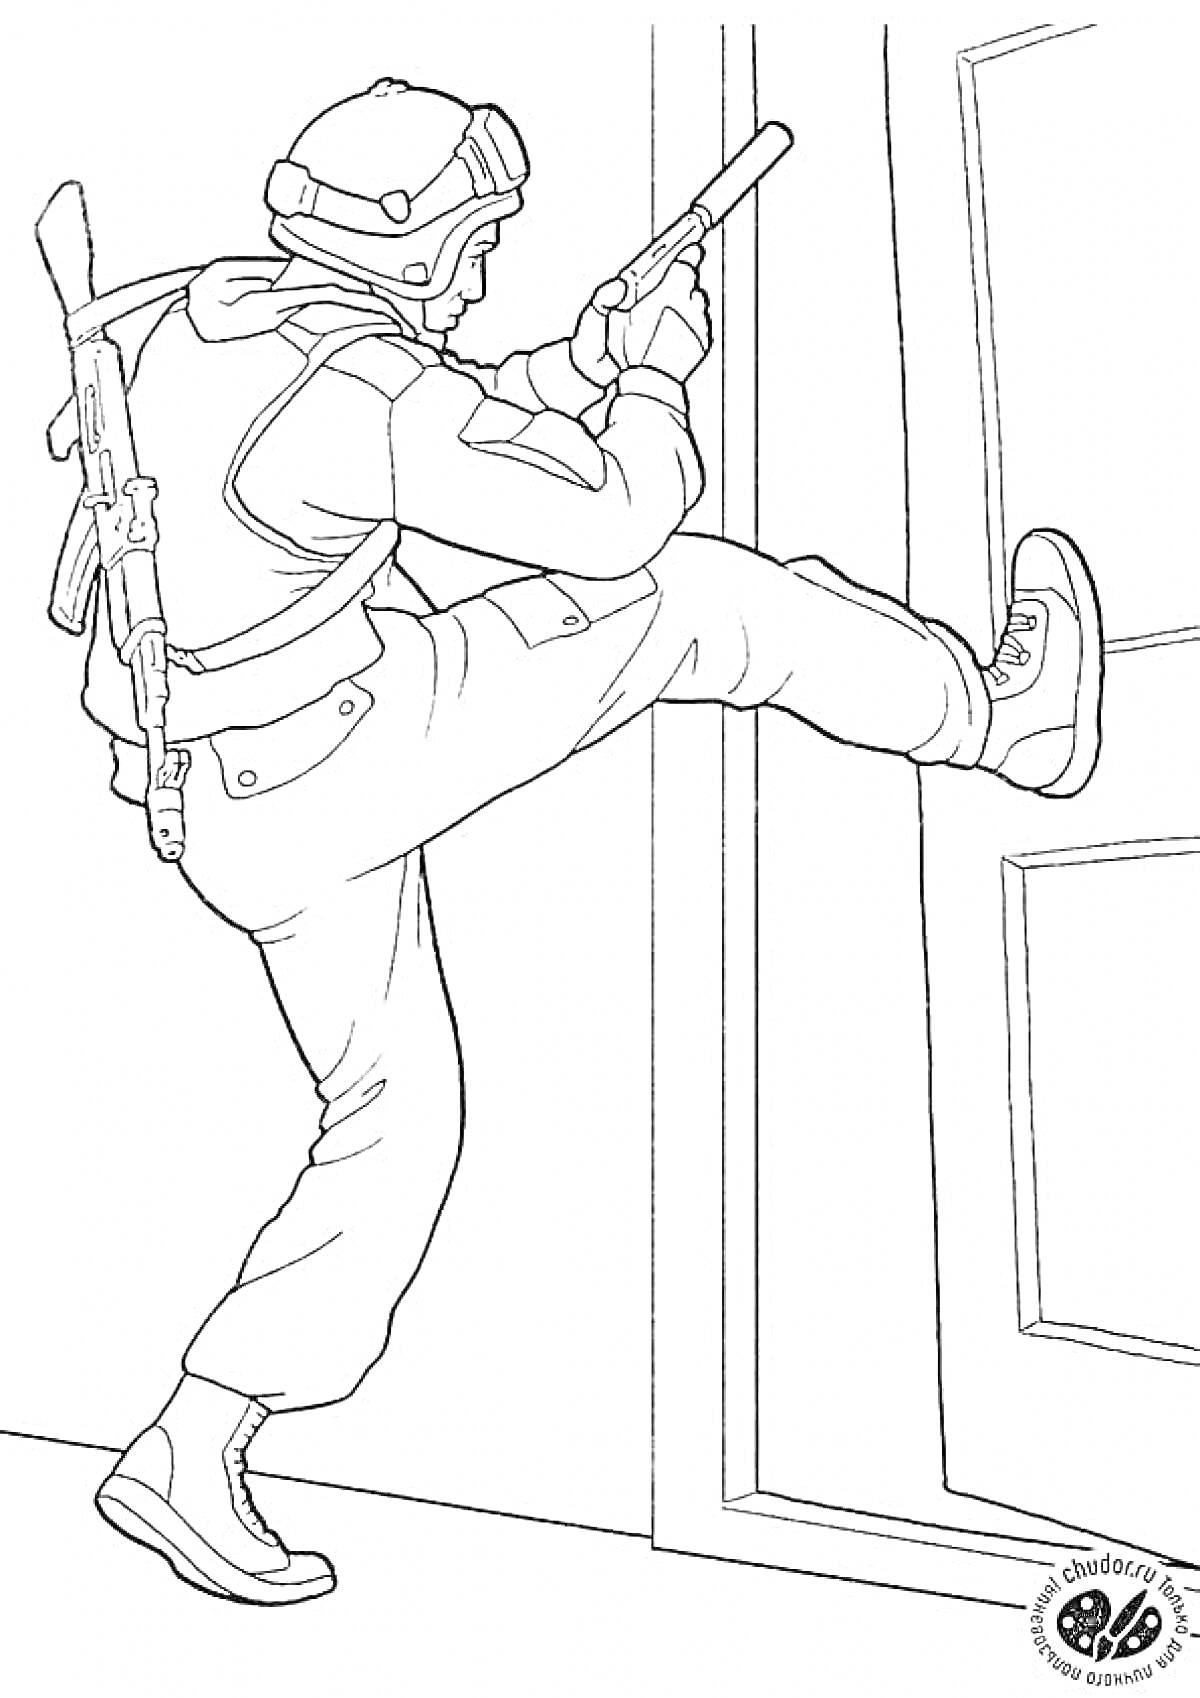 РаскраскаСпецназовец, взламывающий дверь ногой с пистолетом и автоматом